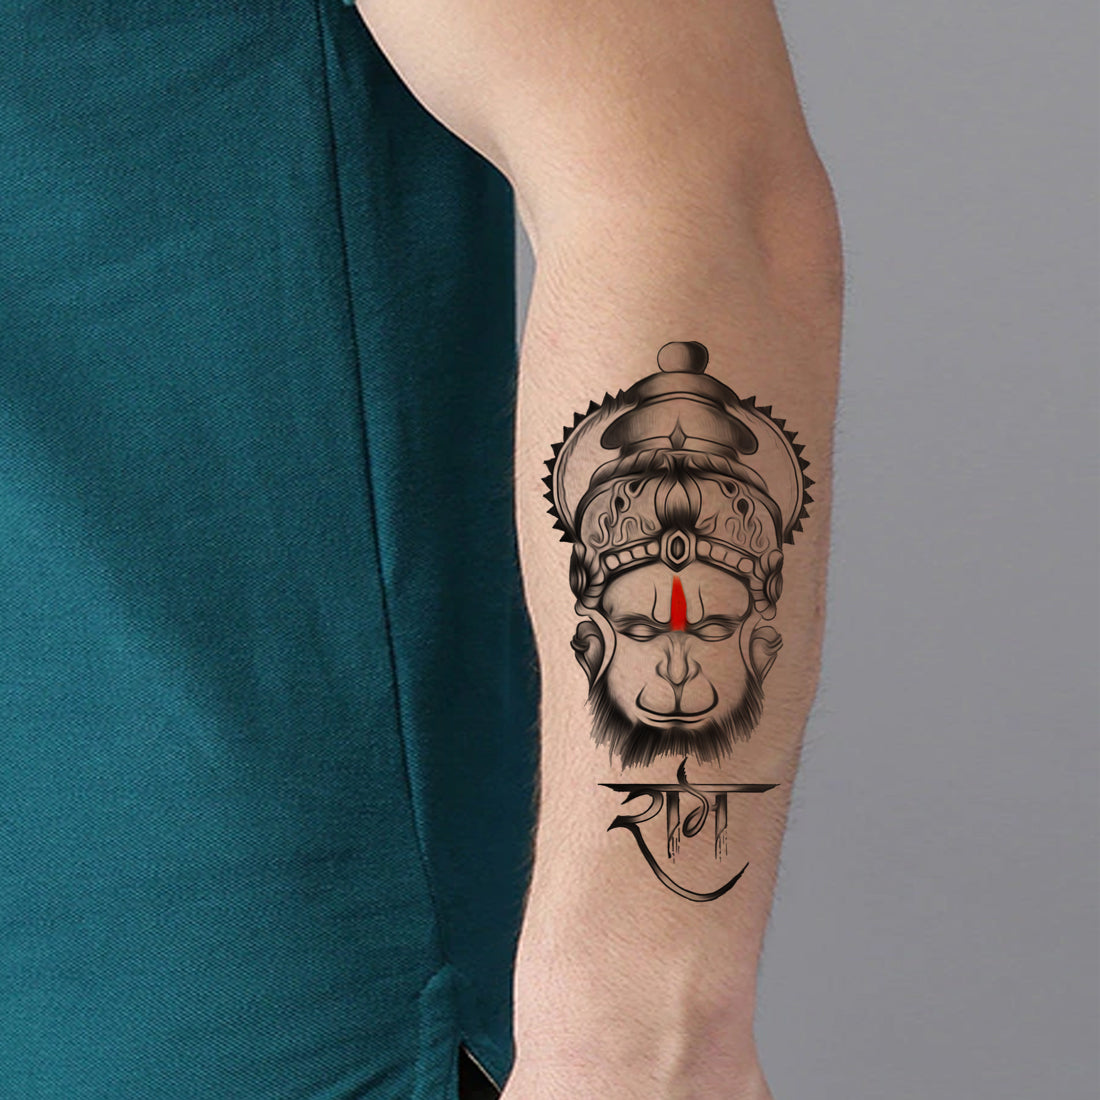 Tattoo Artist make tatoo on ram bhakts for ram mandir video | रामलला की  प्राण-प्रतिष्ठा के लिए राम भक्त तैयार: अलग-अलग तरीको से श्रीराम की सेवा कर  रहे; टैटू आर्टिस्ट ने ...